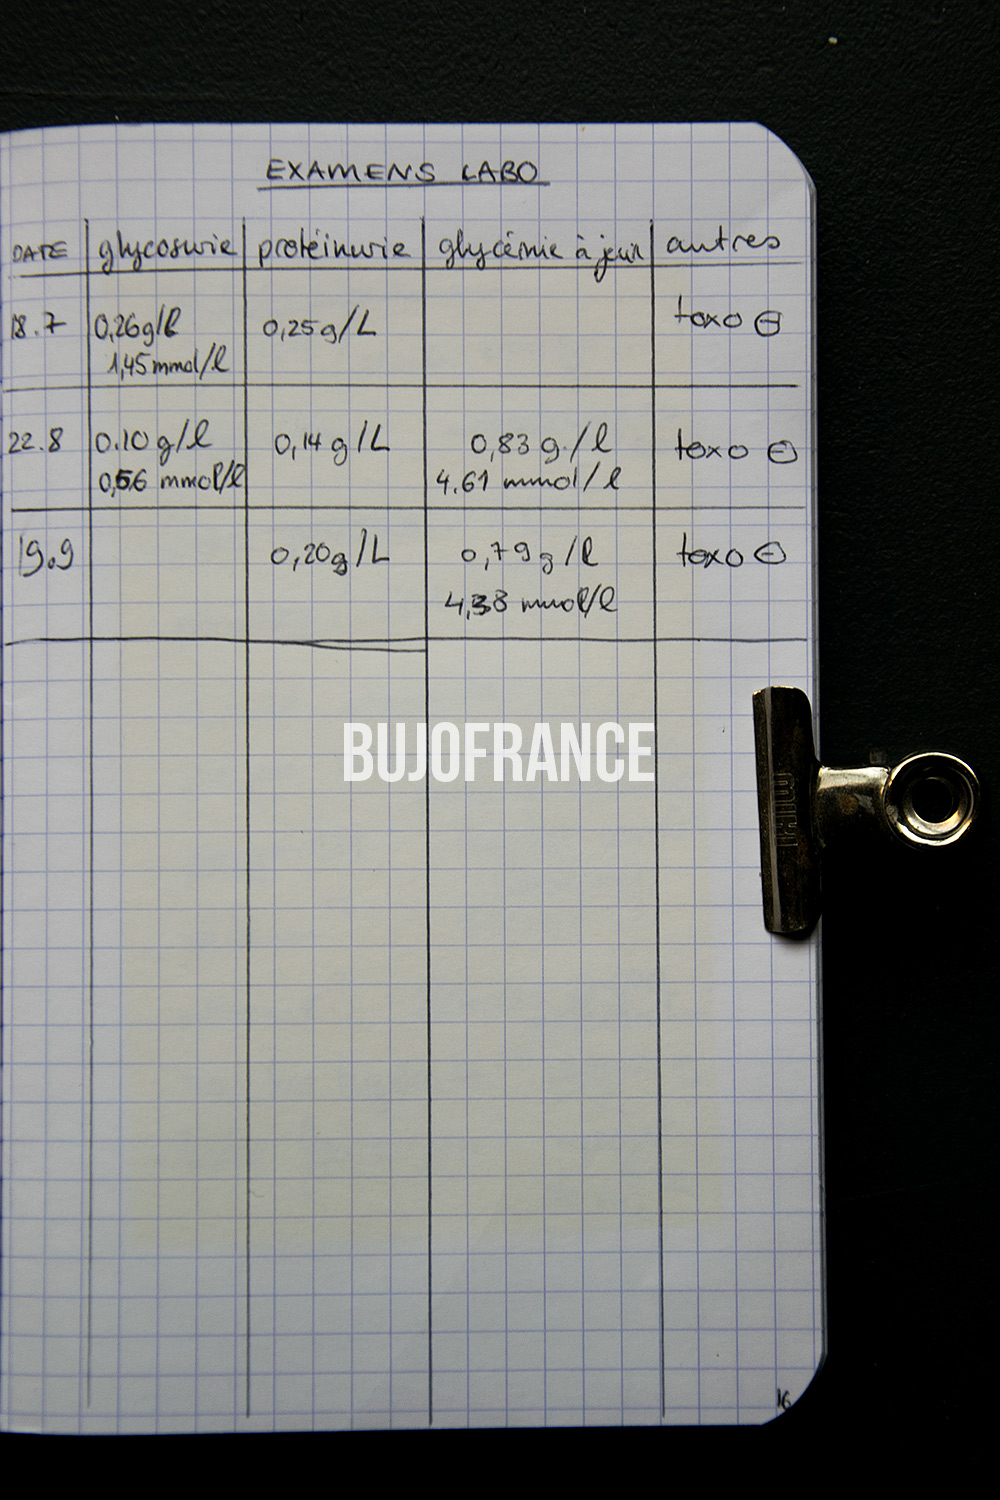 bullet-journal-bujofrance-carnet-grossesse-6